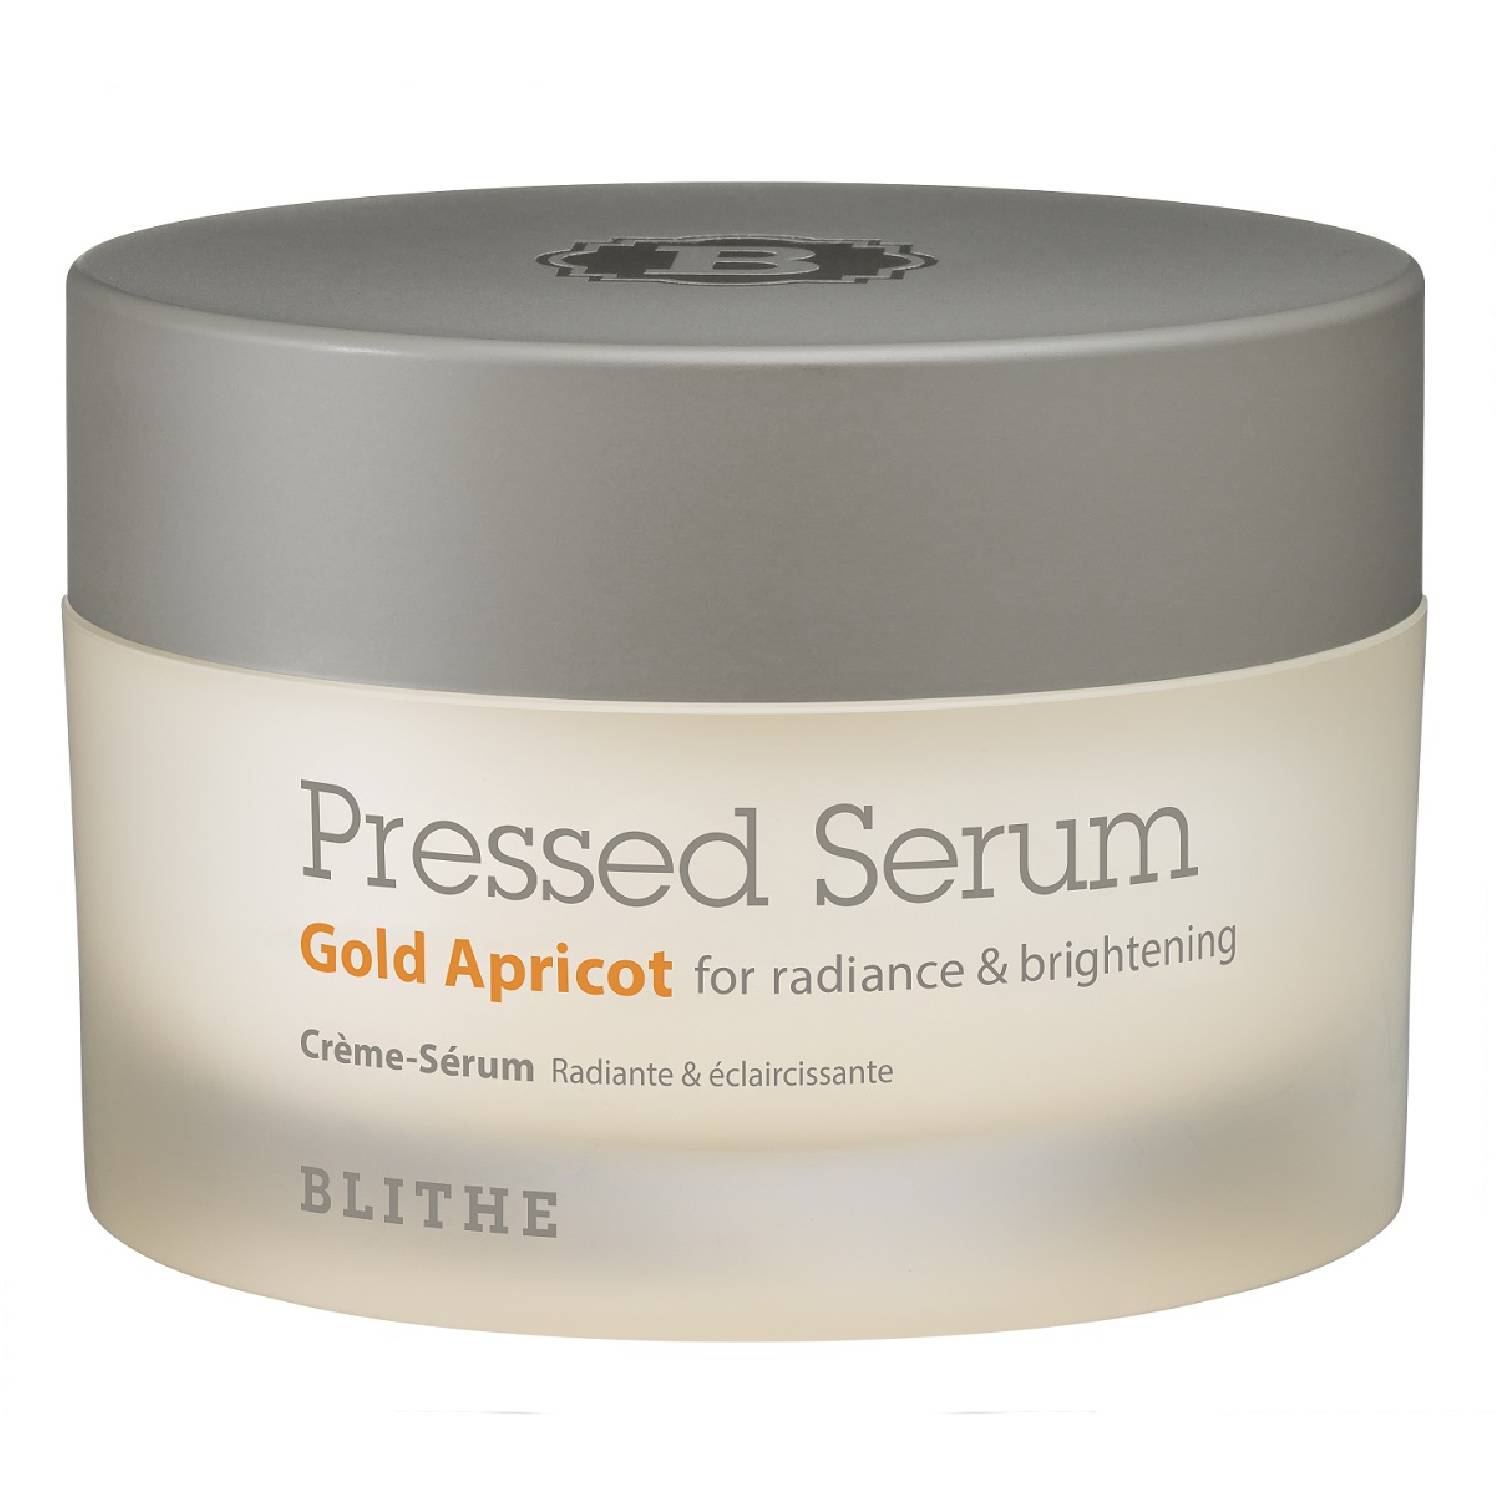 Blithe Сыворотка-крем спрессованная Золотой абрикос для лица для сияния Gold Apricot, 50 г (Blithe, Pressed Serum)